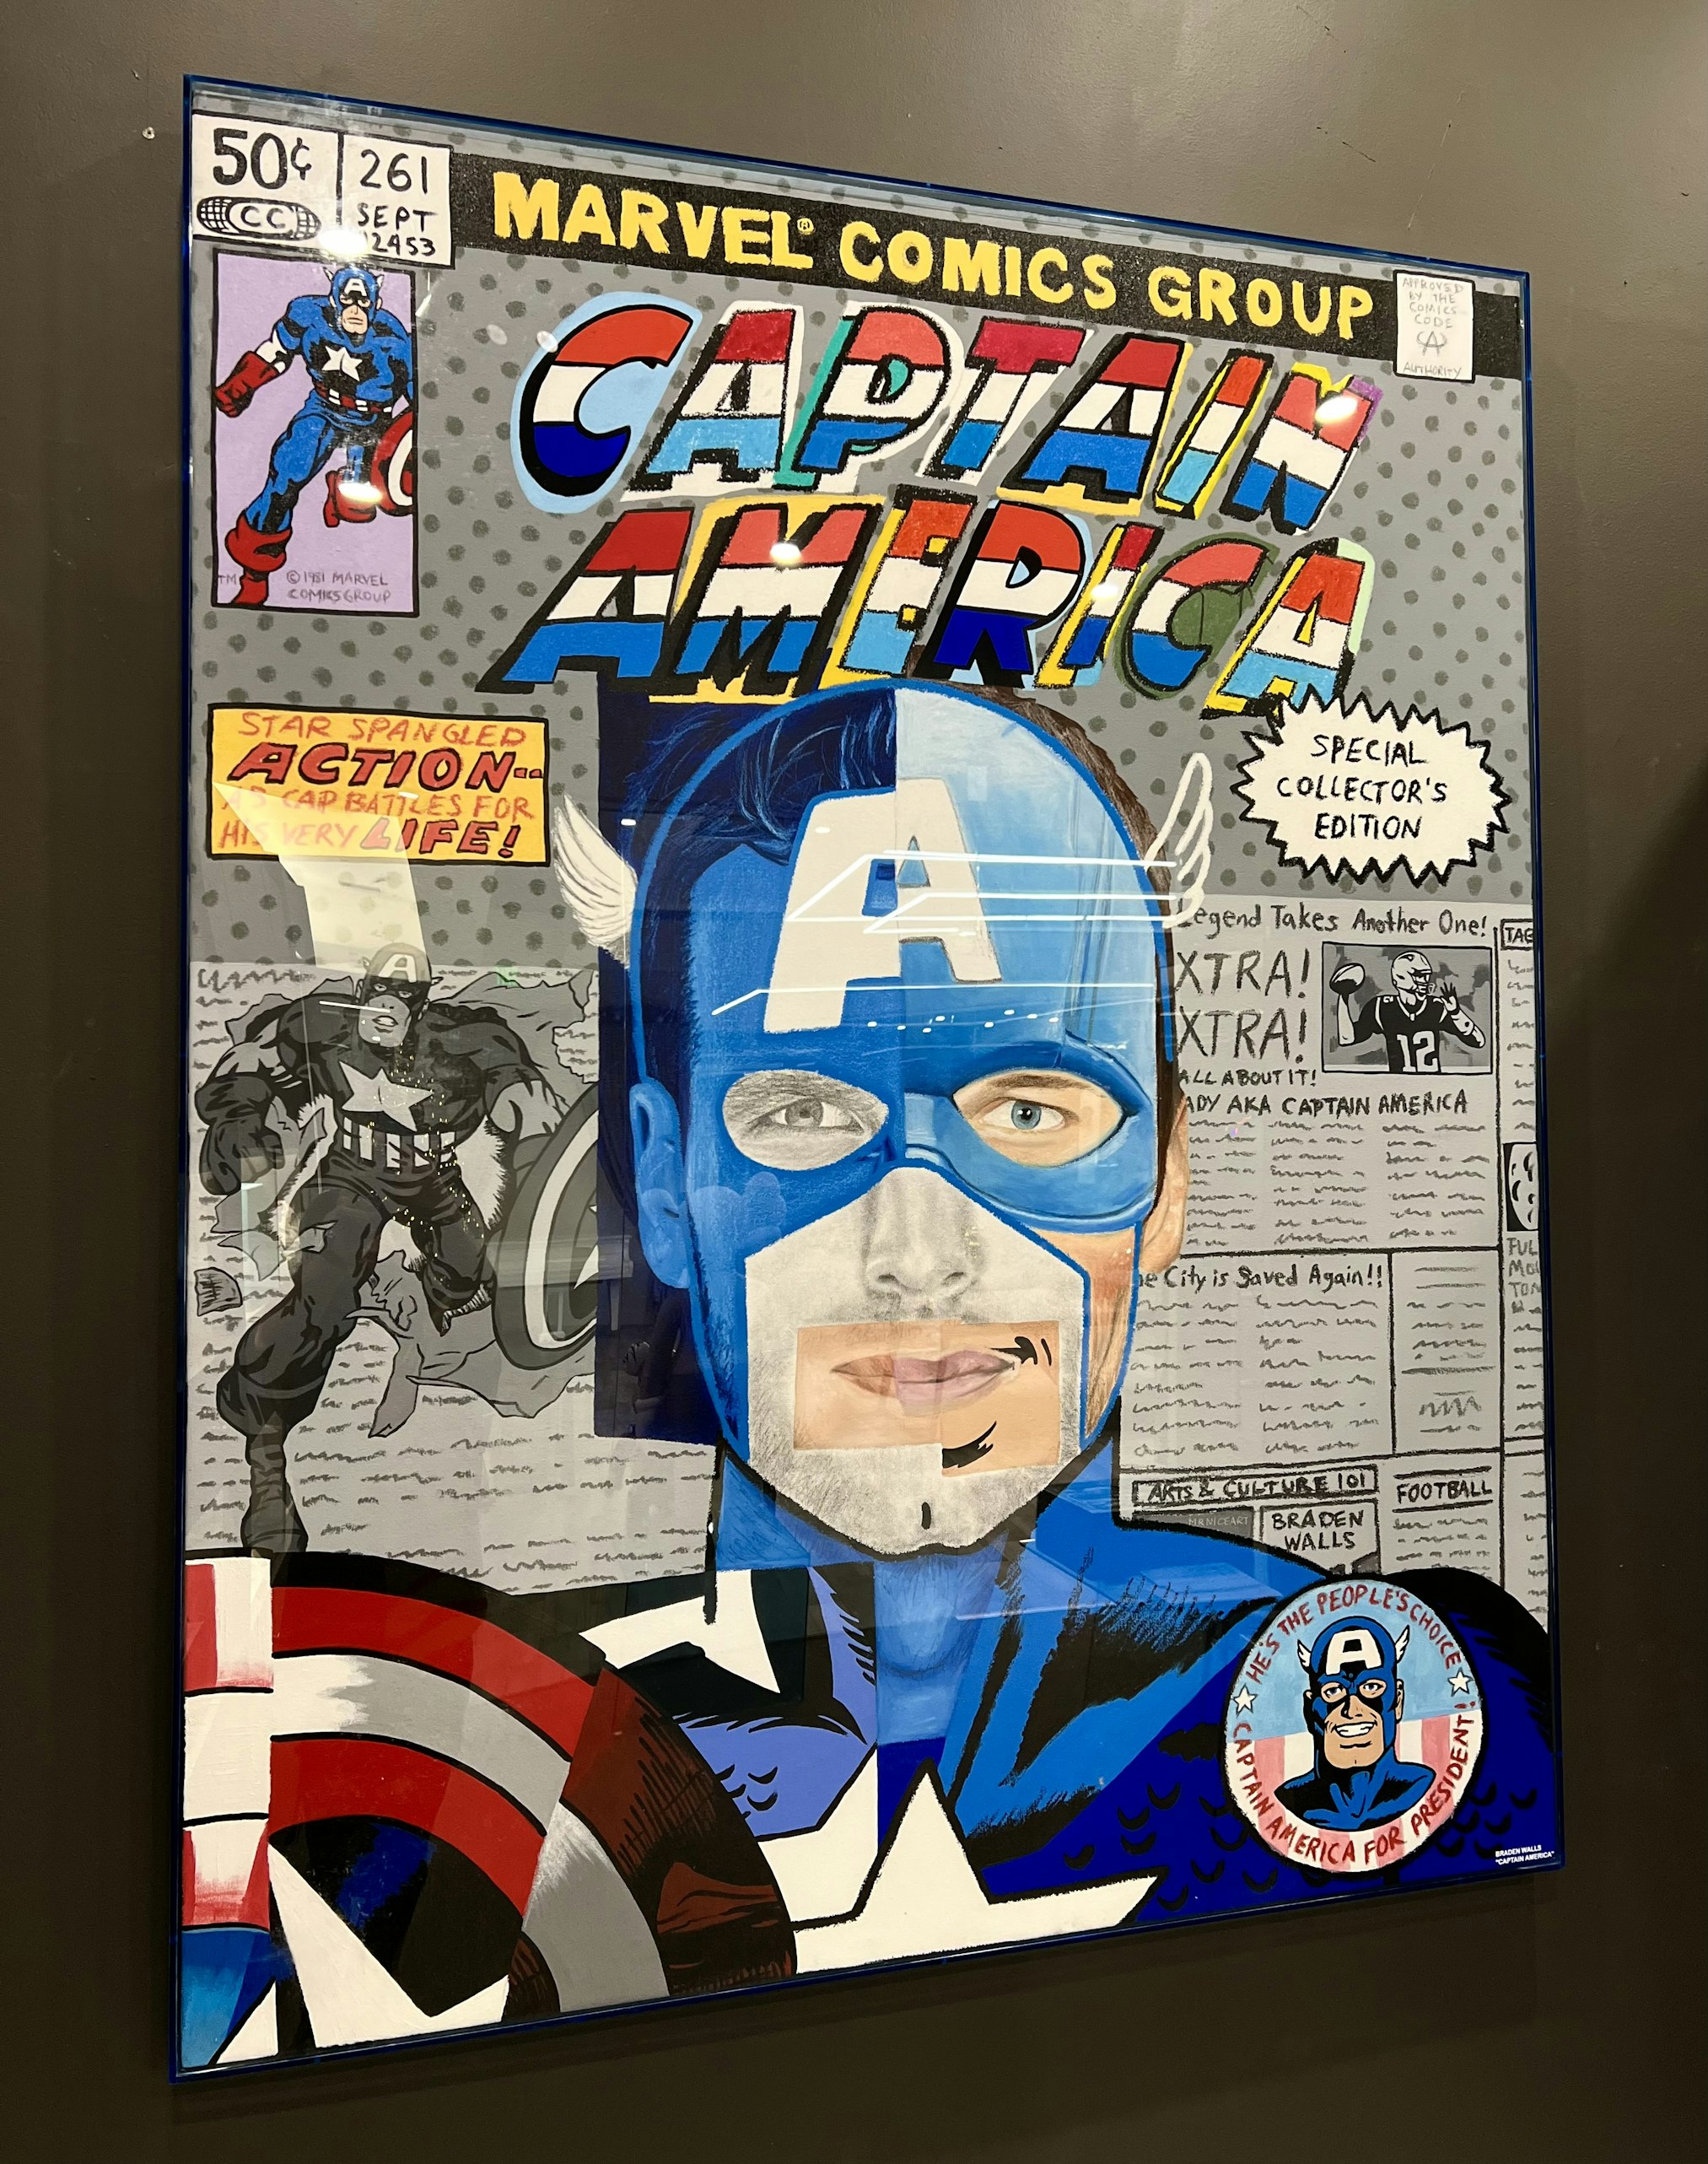 Tom Brady as Captain America